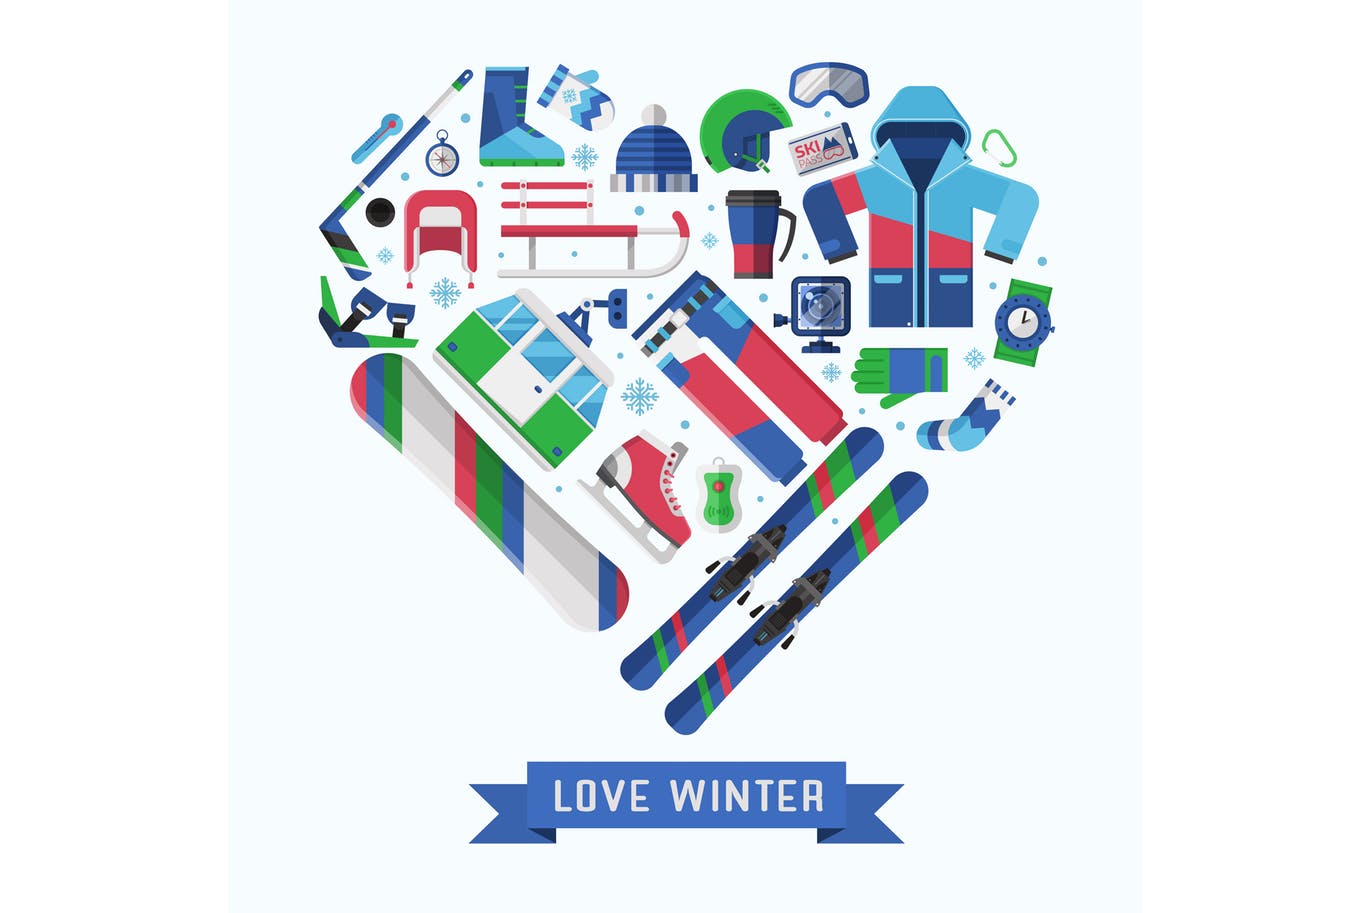 冬季运动主题扁平设计风格心形矢量插画非凡图库精选 Love Winter Sports Heart Print插图